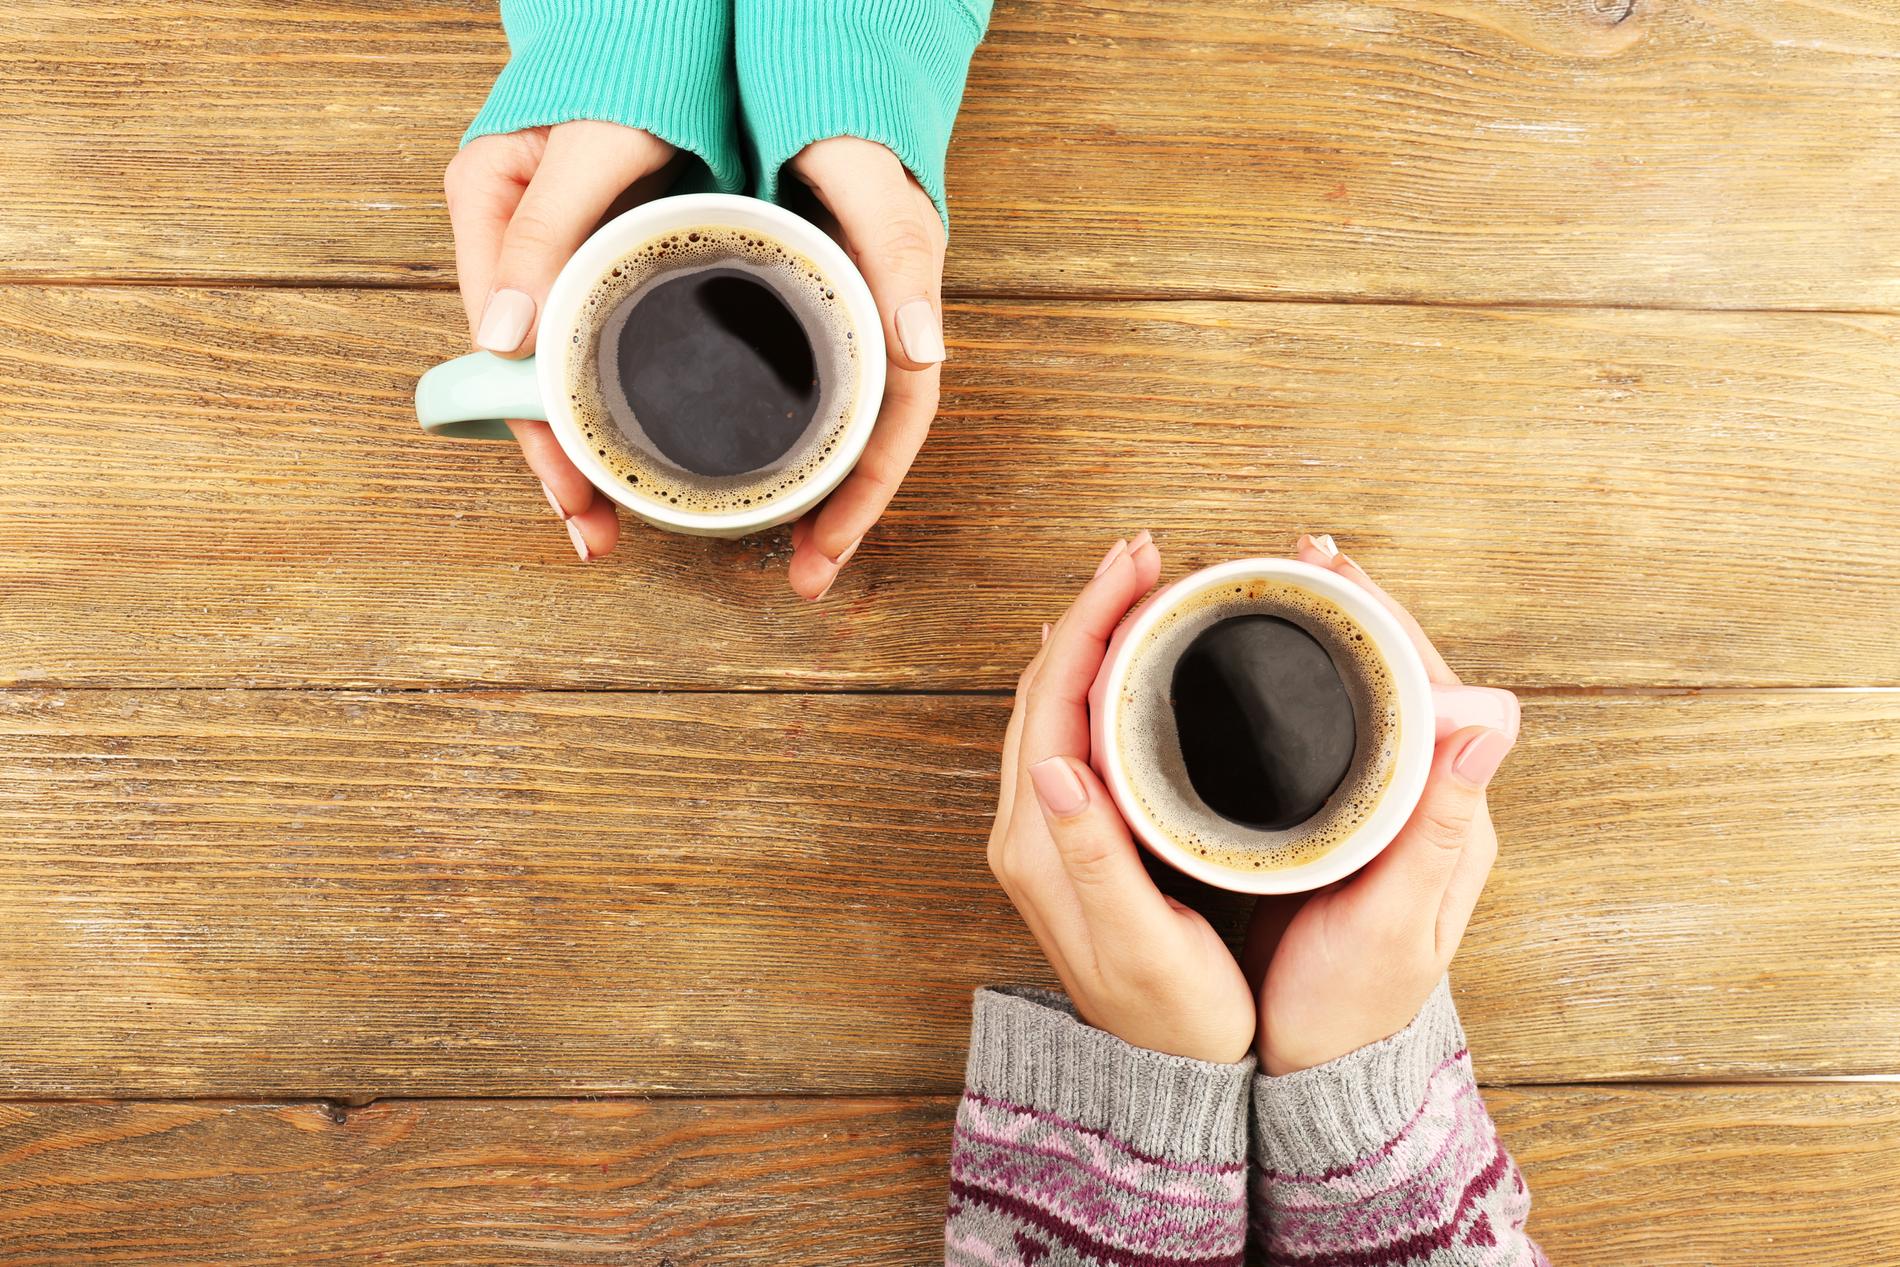 SOSIALT: Kaffe kan samle mennesker, og det er positivt.